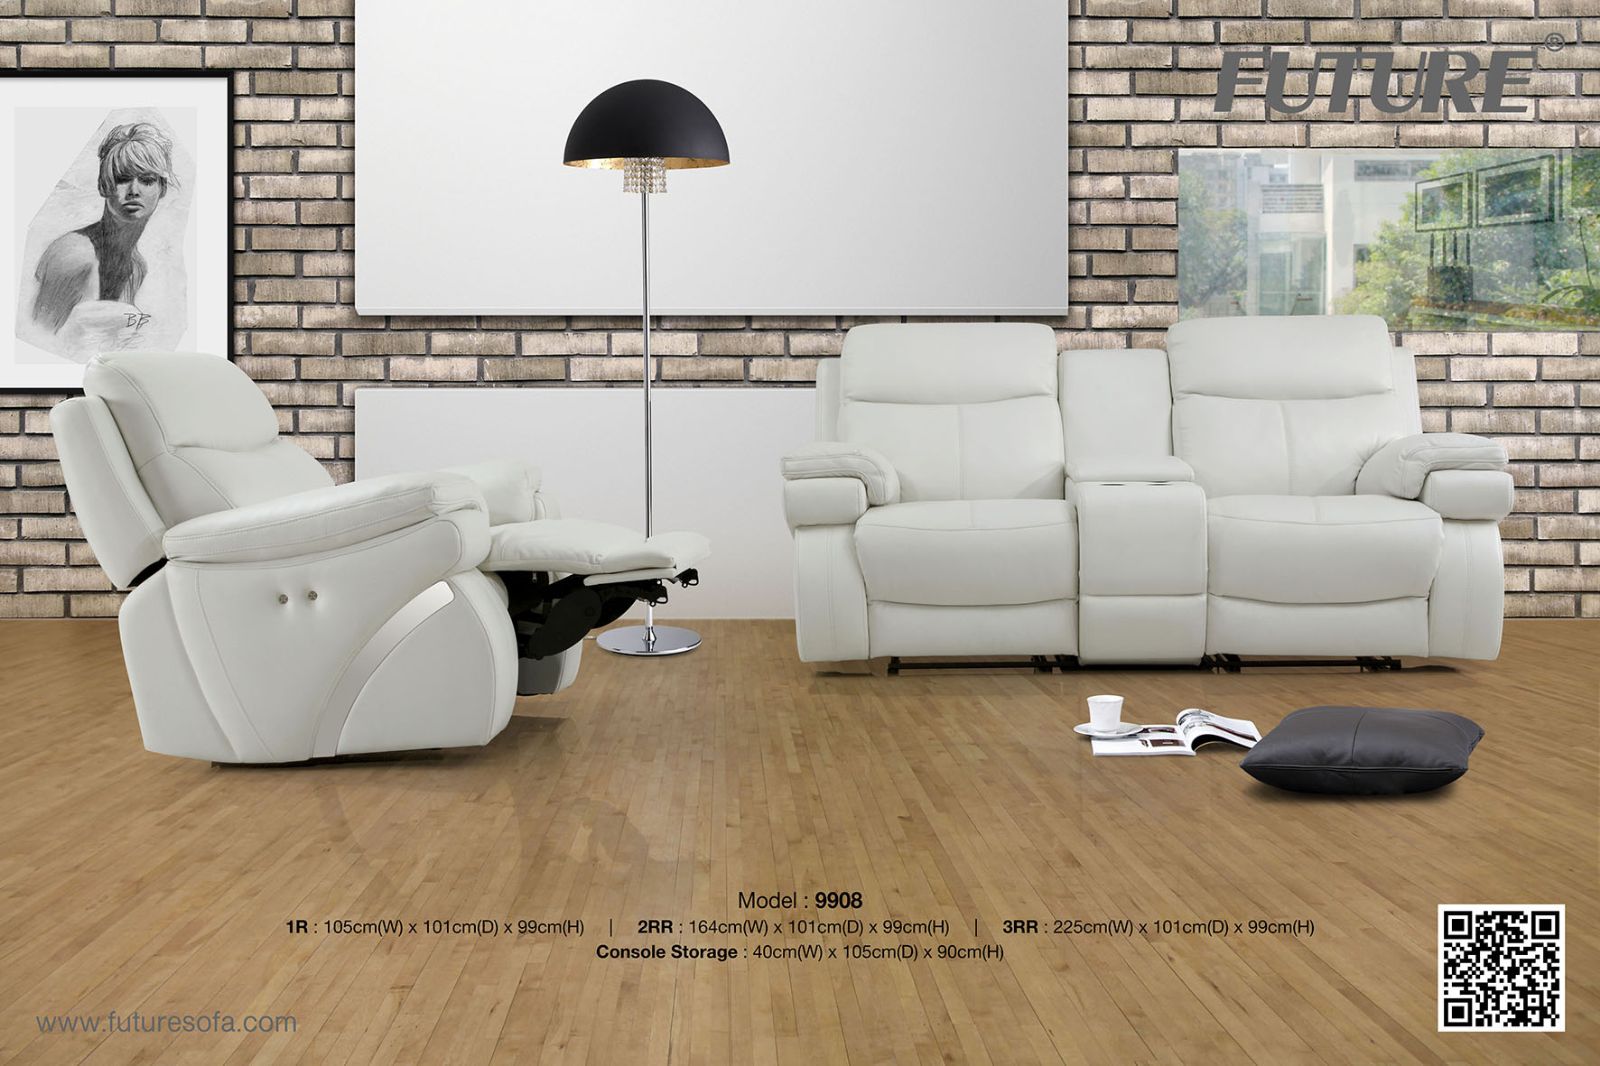 Ghế sofa màu trắng tạo lên vẻ sang trọng cho không gian